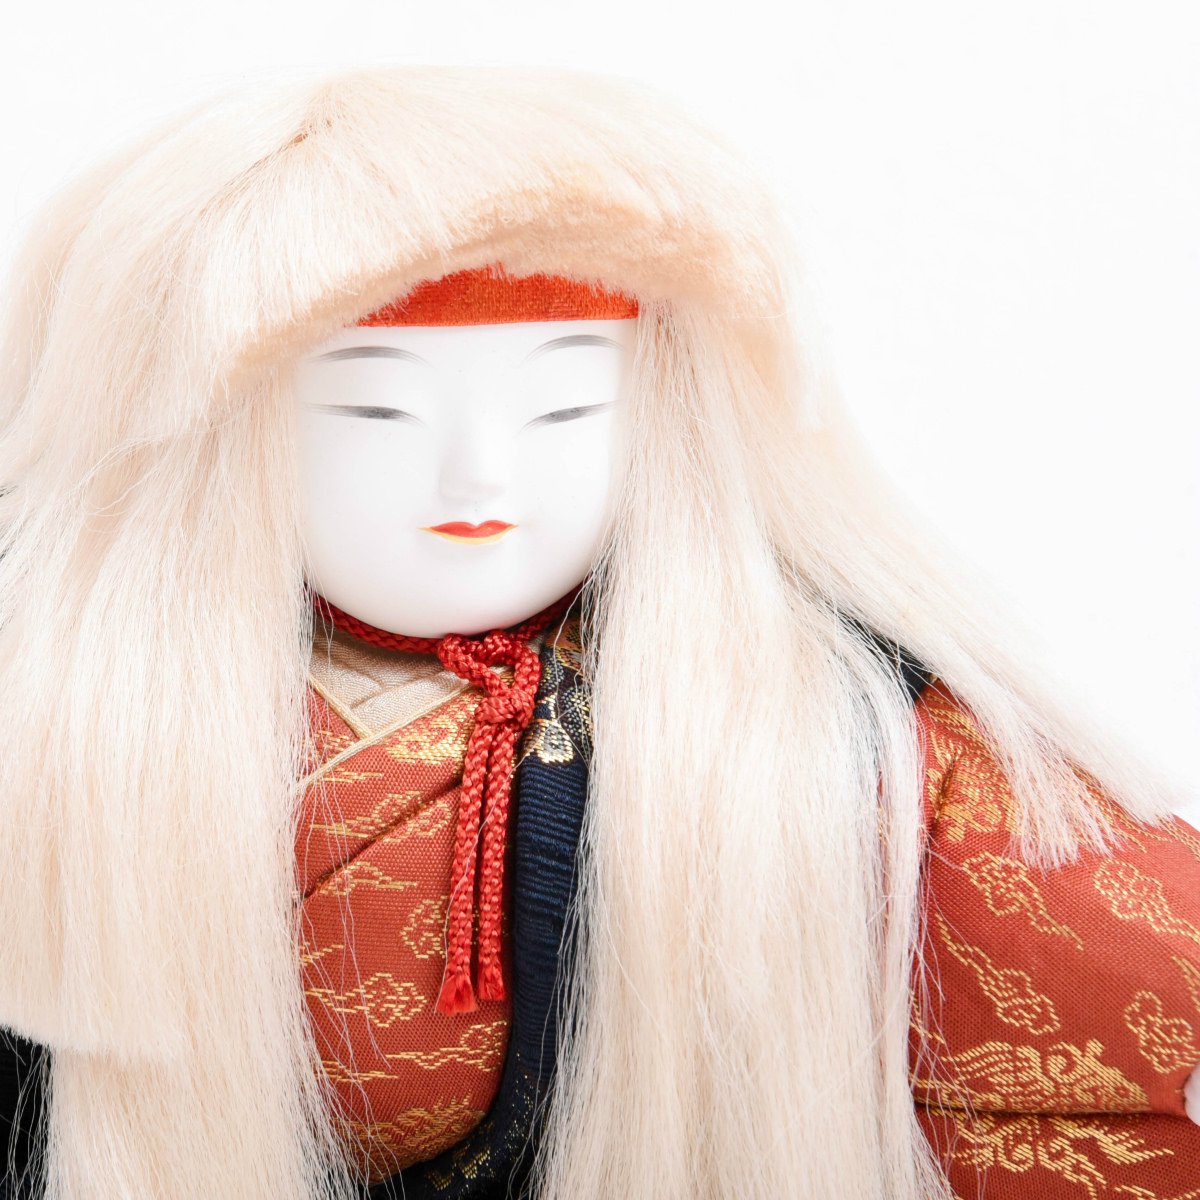 ハンドメイド作品 東京木目込み人形の高級特大羽子板 おもちゃ